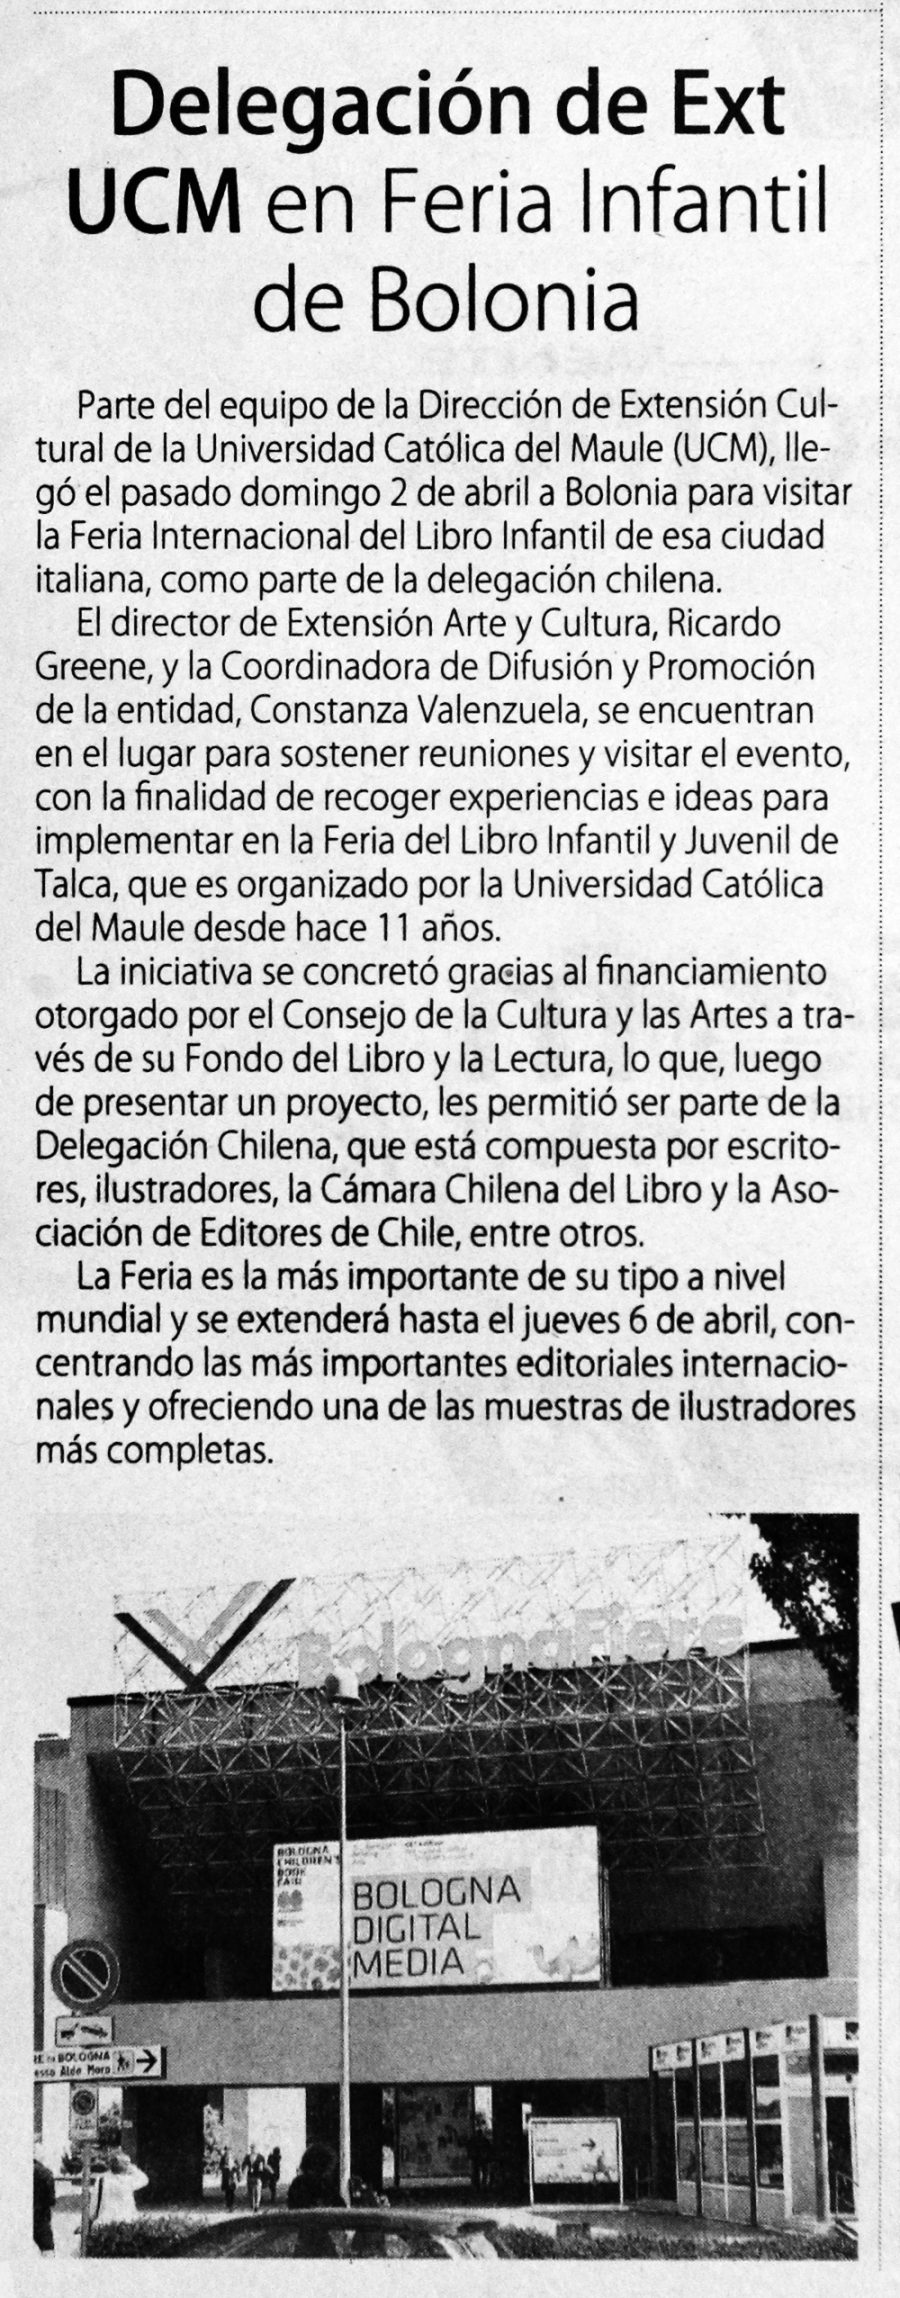 05 de abril en Diario El Centro: “Delegación de EXT UCM en Feria Infantil de Bolonia”